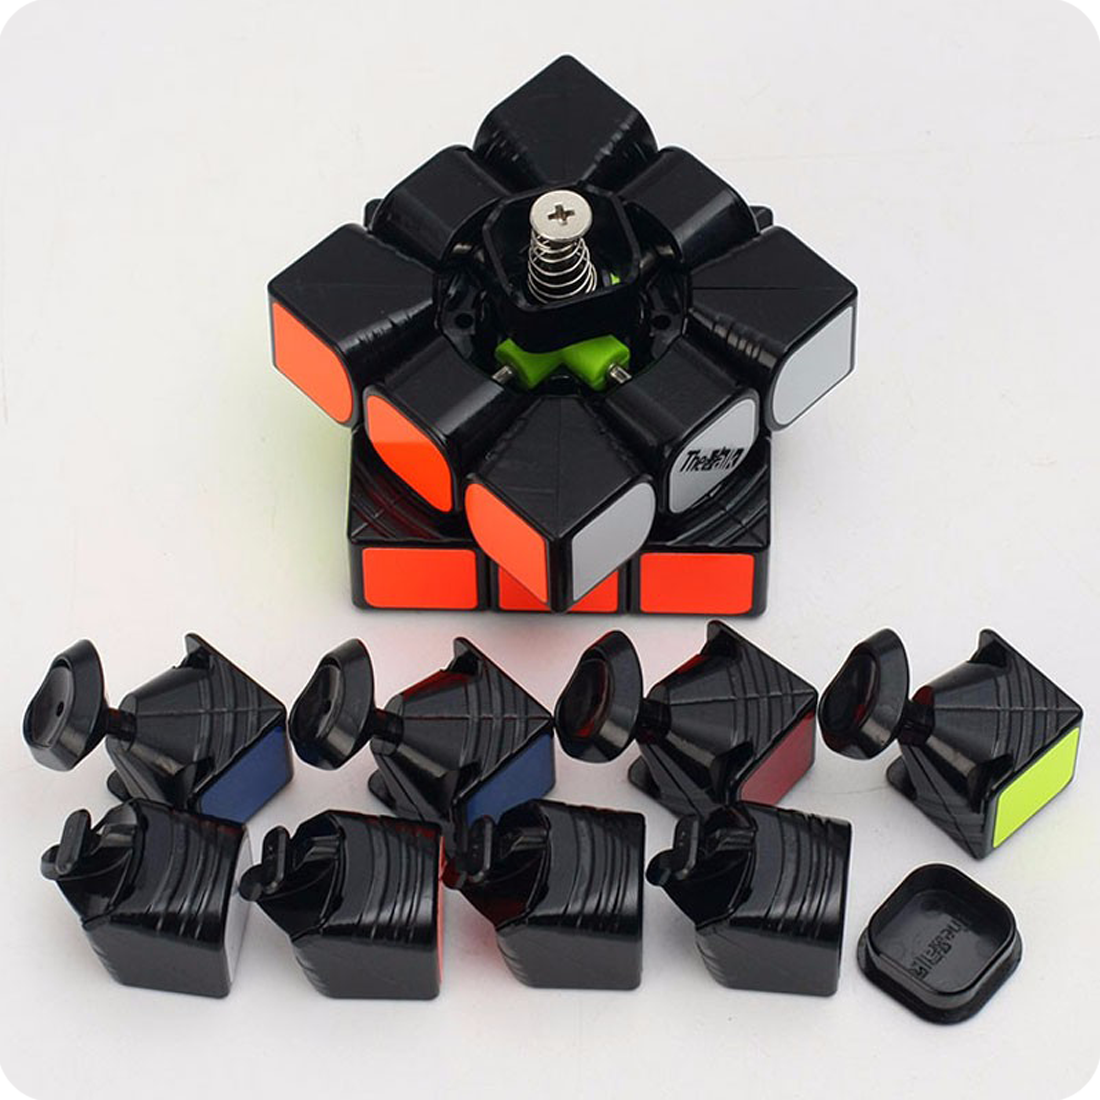 Механизм кубика Рубика 3х3. Кубик Valk 3. Разобранный кубик Рубика 3х3. Кубик Рубика Speed Cube. Кубик захват